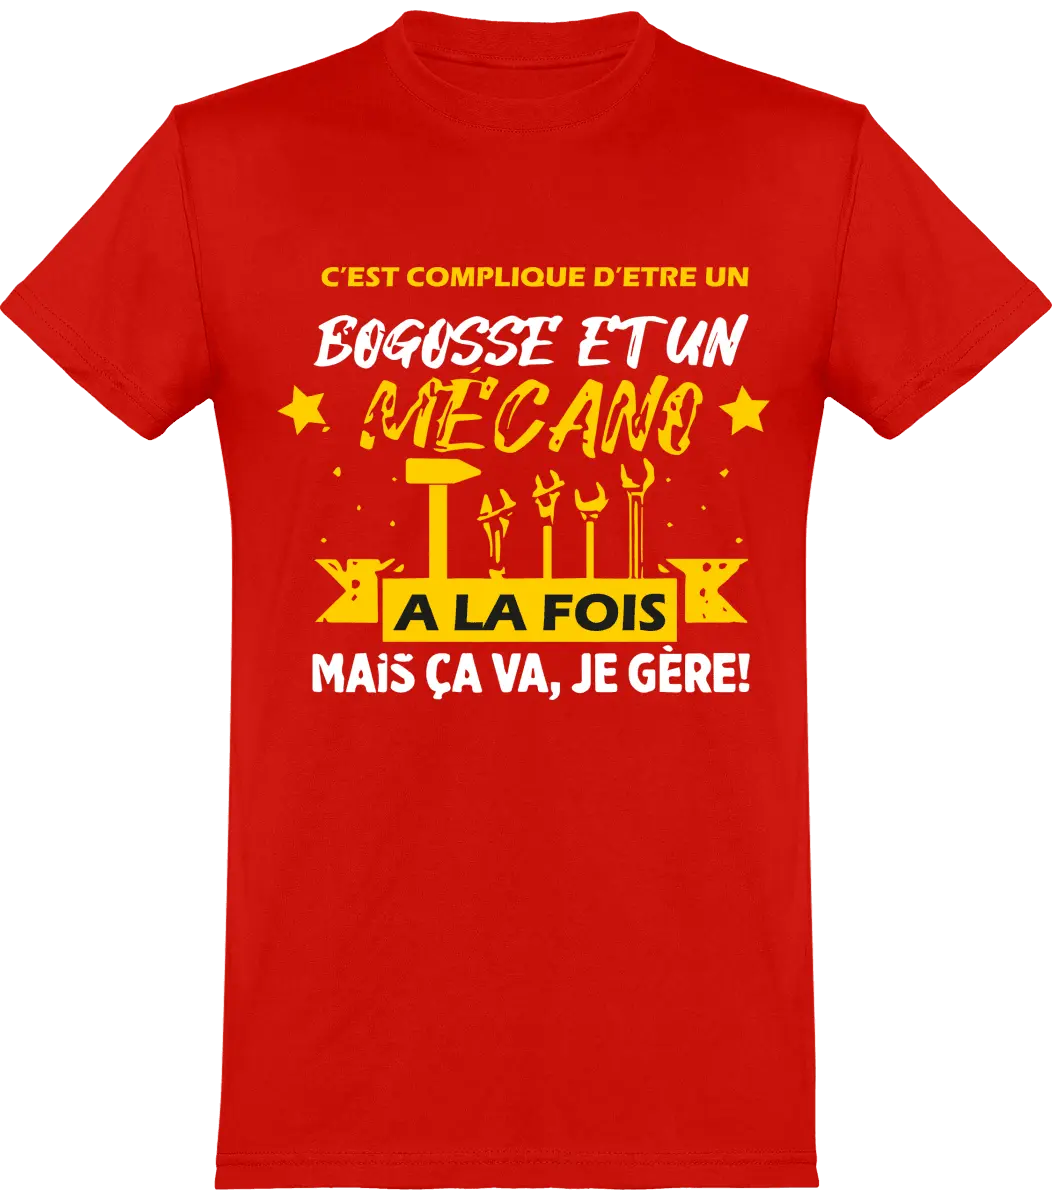 T-shirt mécanique "C'est compliqué d'être bogosse et un mécano a la fois mais ça va, je gère !" | Mixte - French Humour